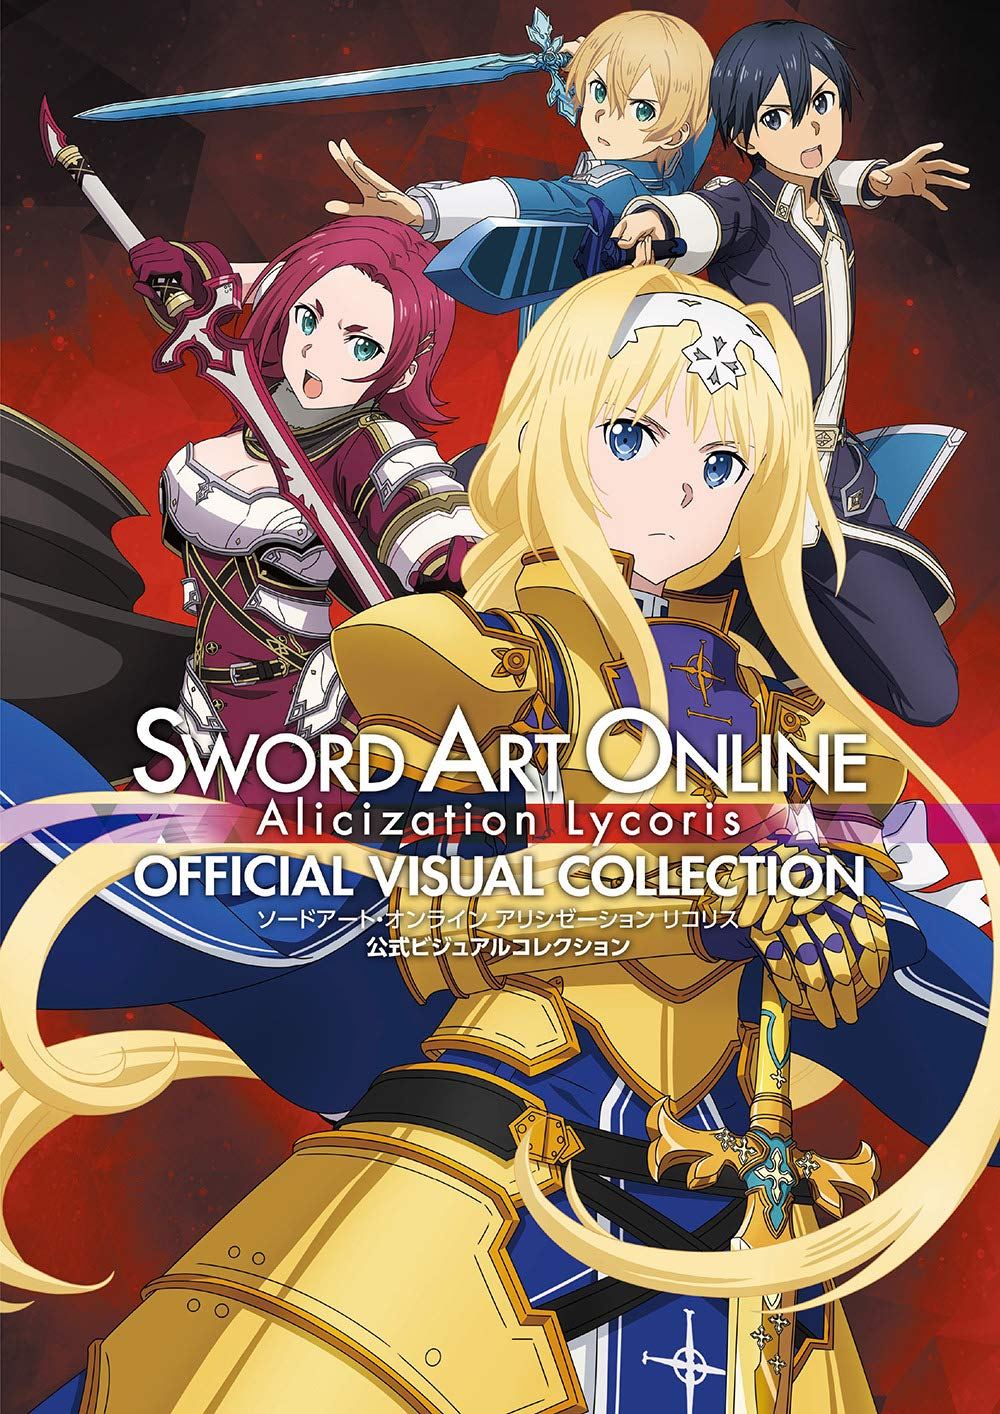 Sword Art Online Alicization Lycoris ganha nova data de lançamento